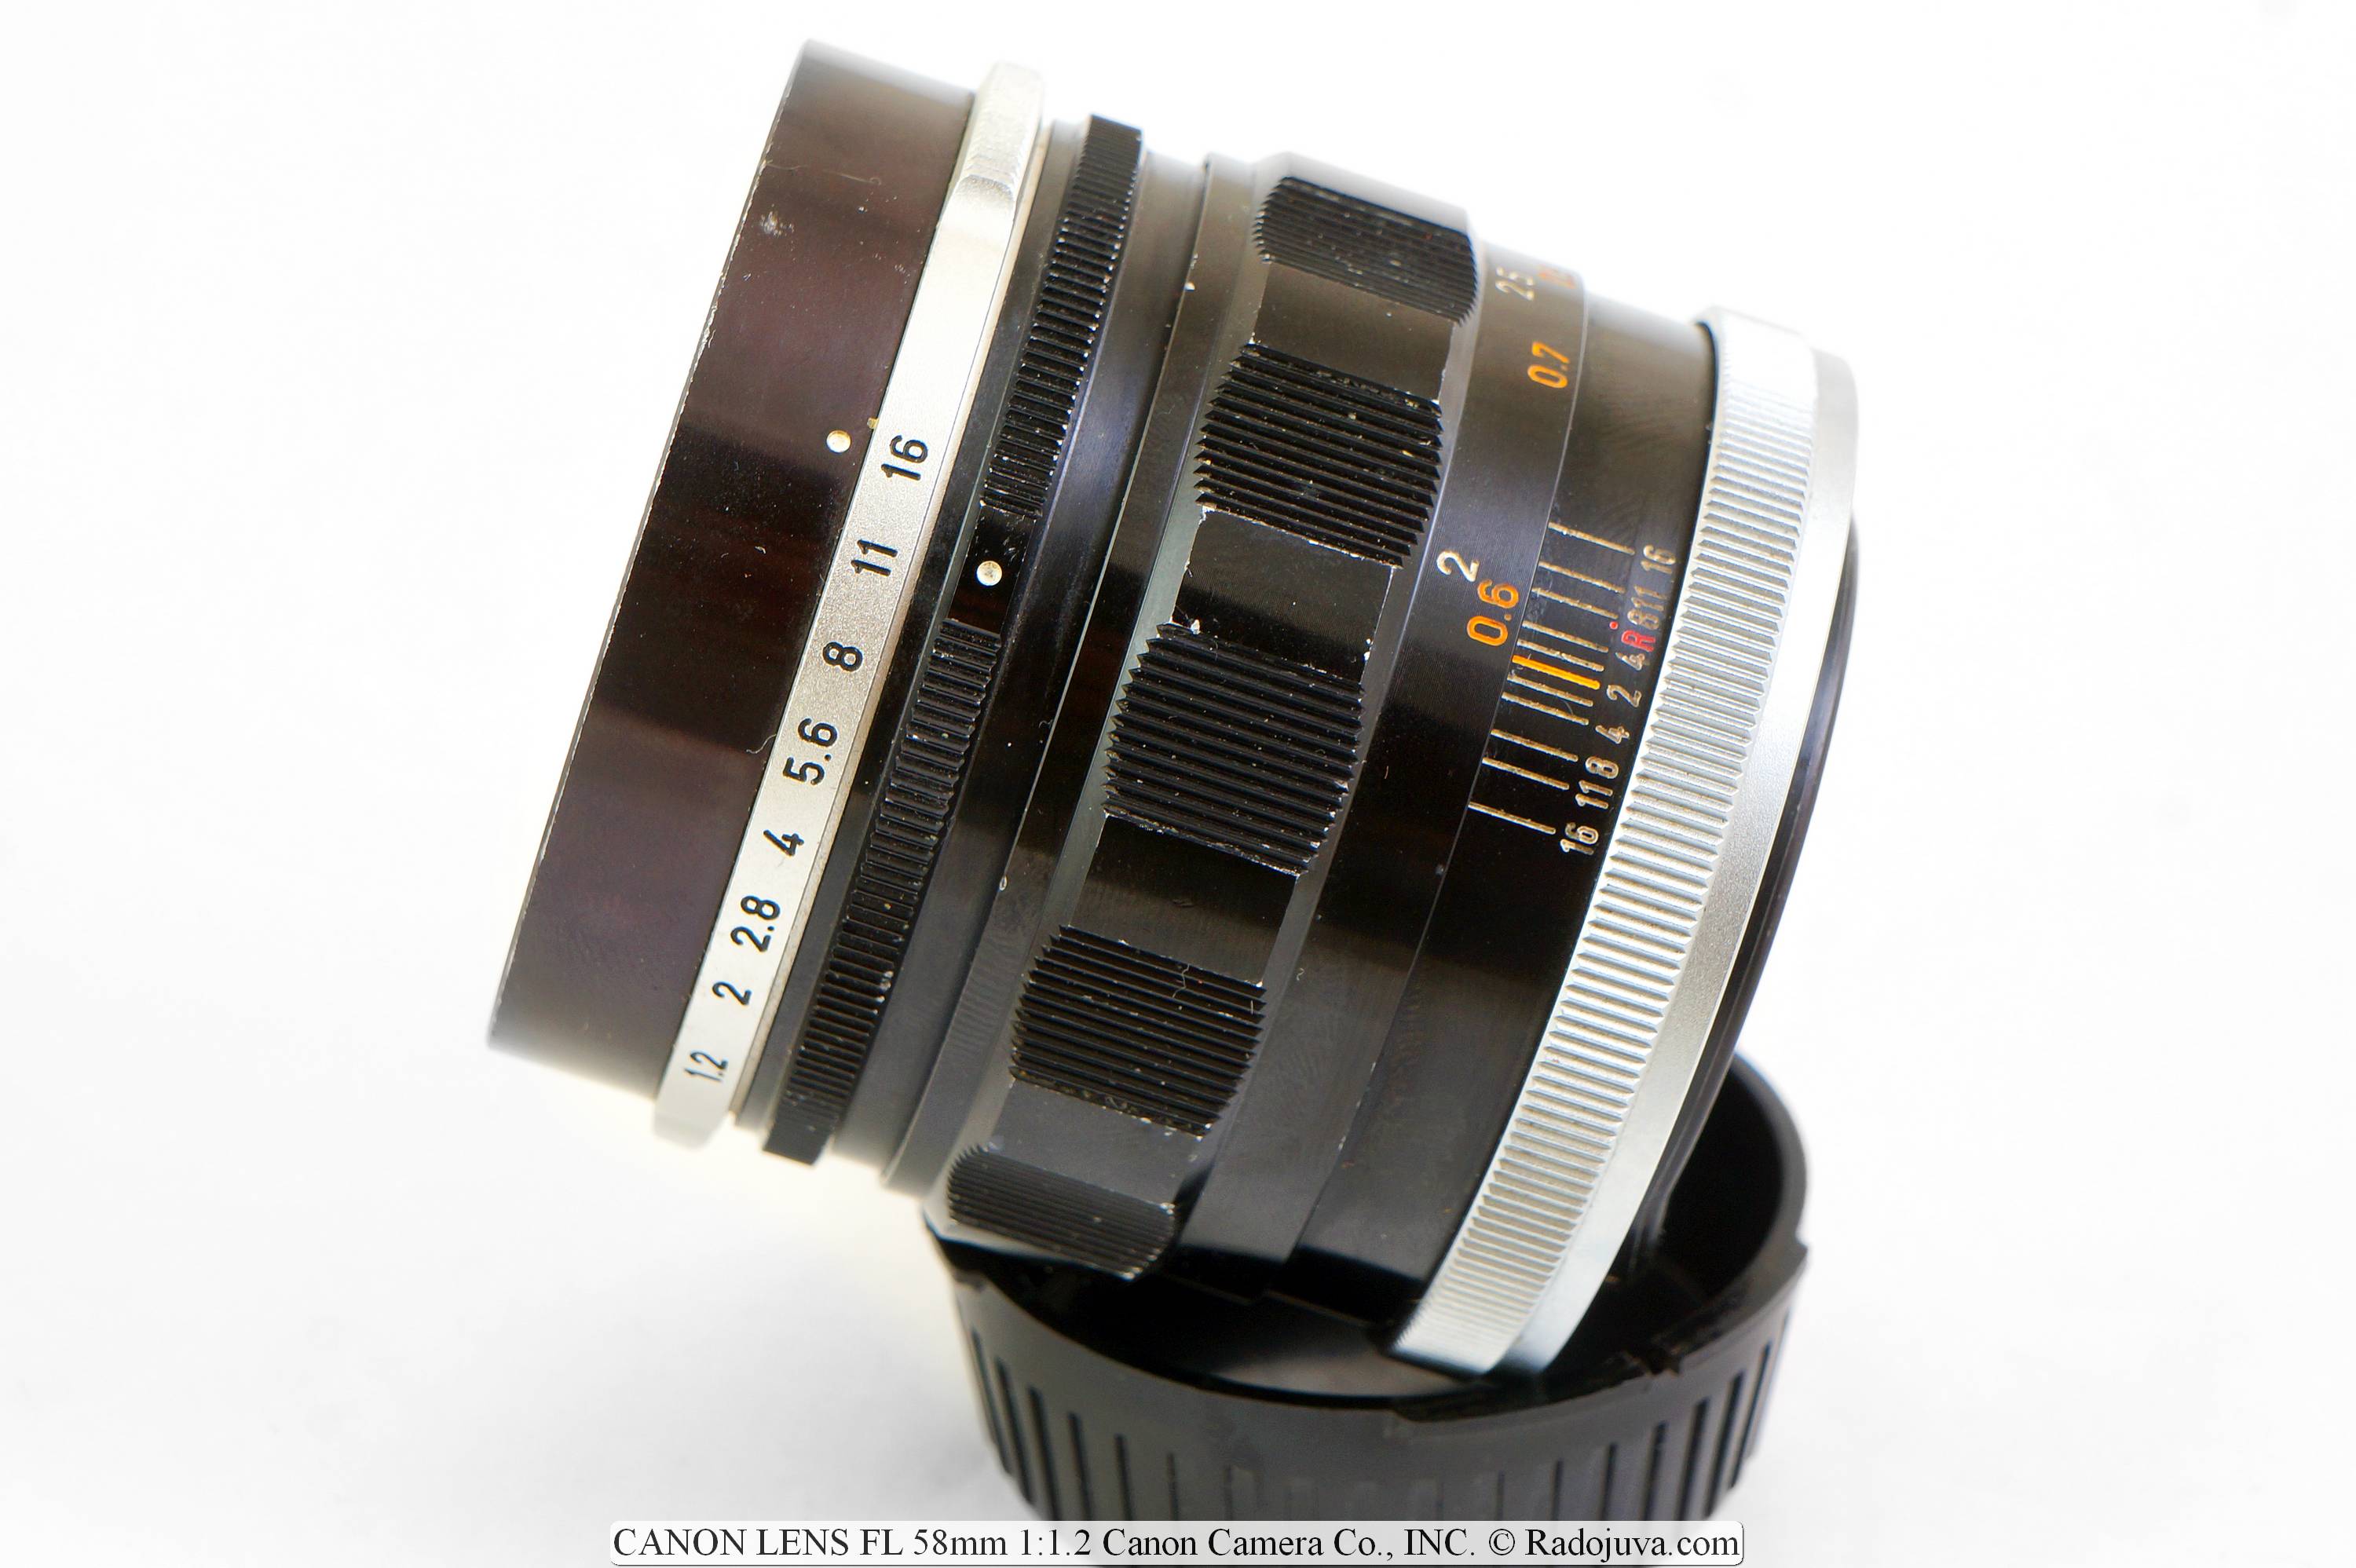 OBJETIVO CANON FL 58 mm 1:1.2 Canon Camera Co., INC.